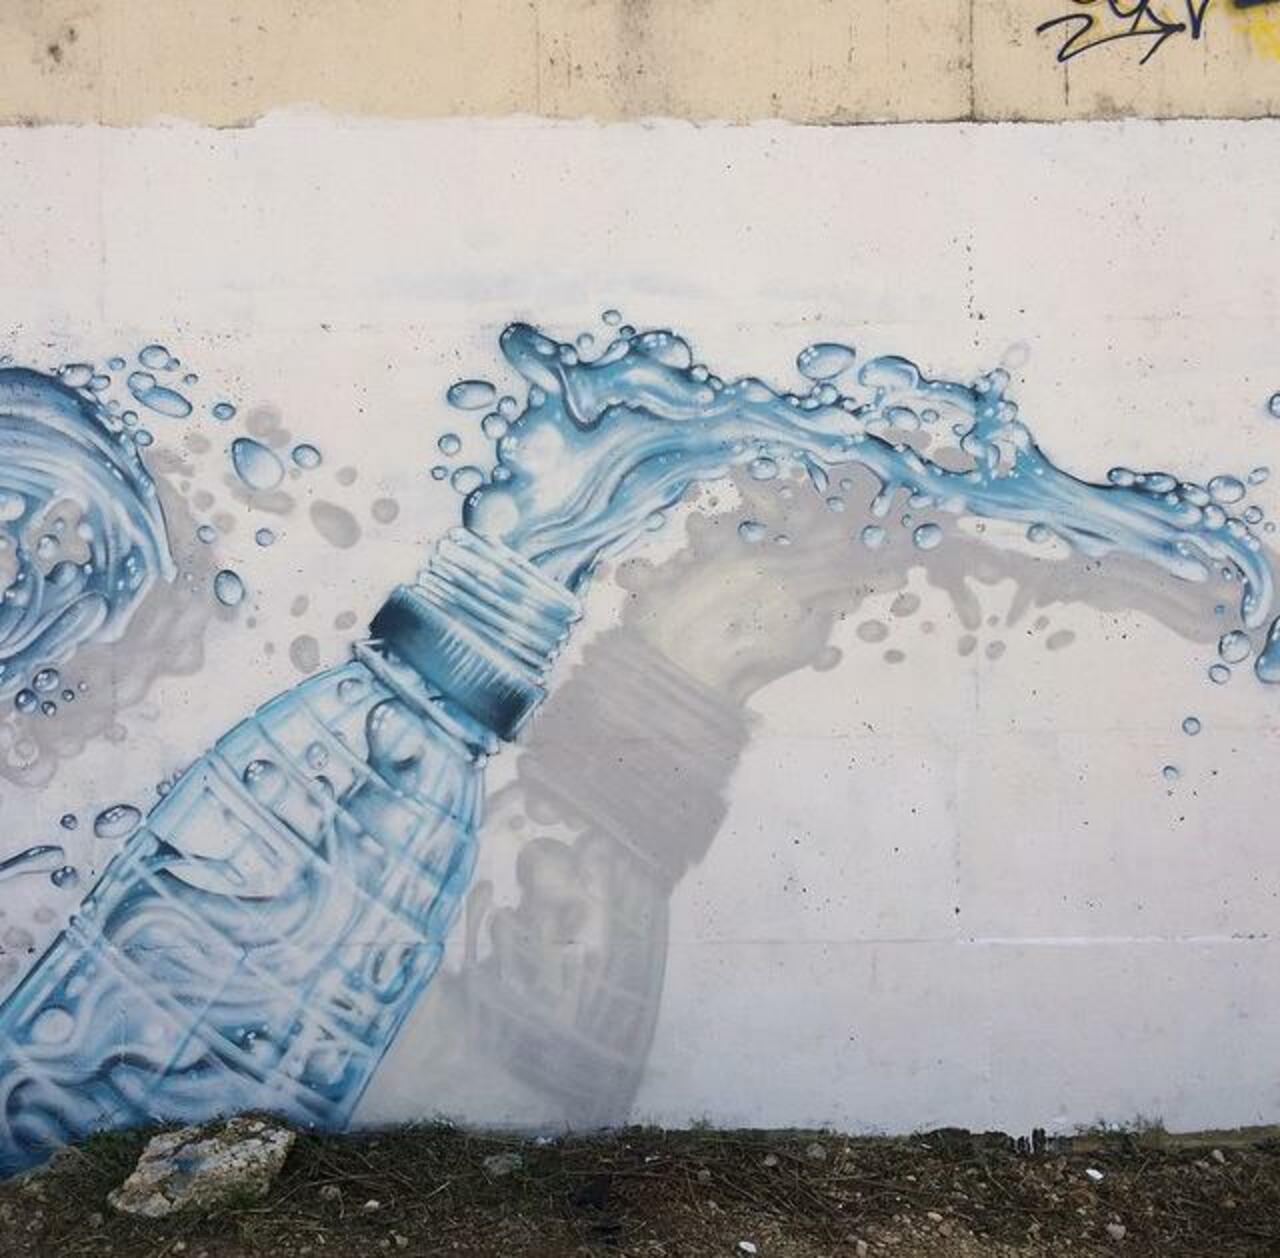 'Bottle'
Class new Street Art by JeazeOner 

#art #arte #graffiti #streetart http://t.co/zzlFJueePR